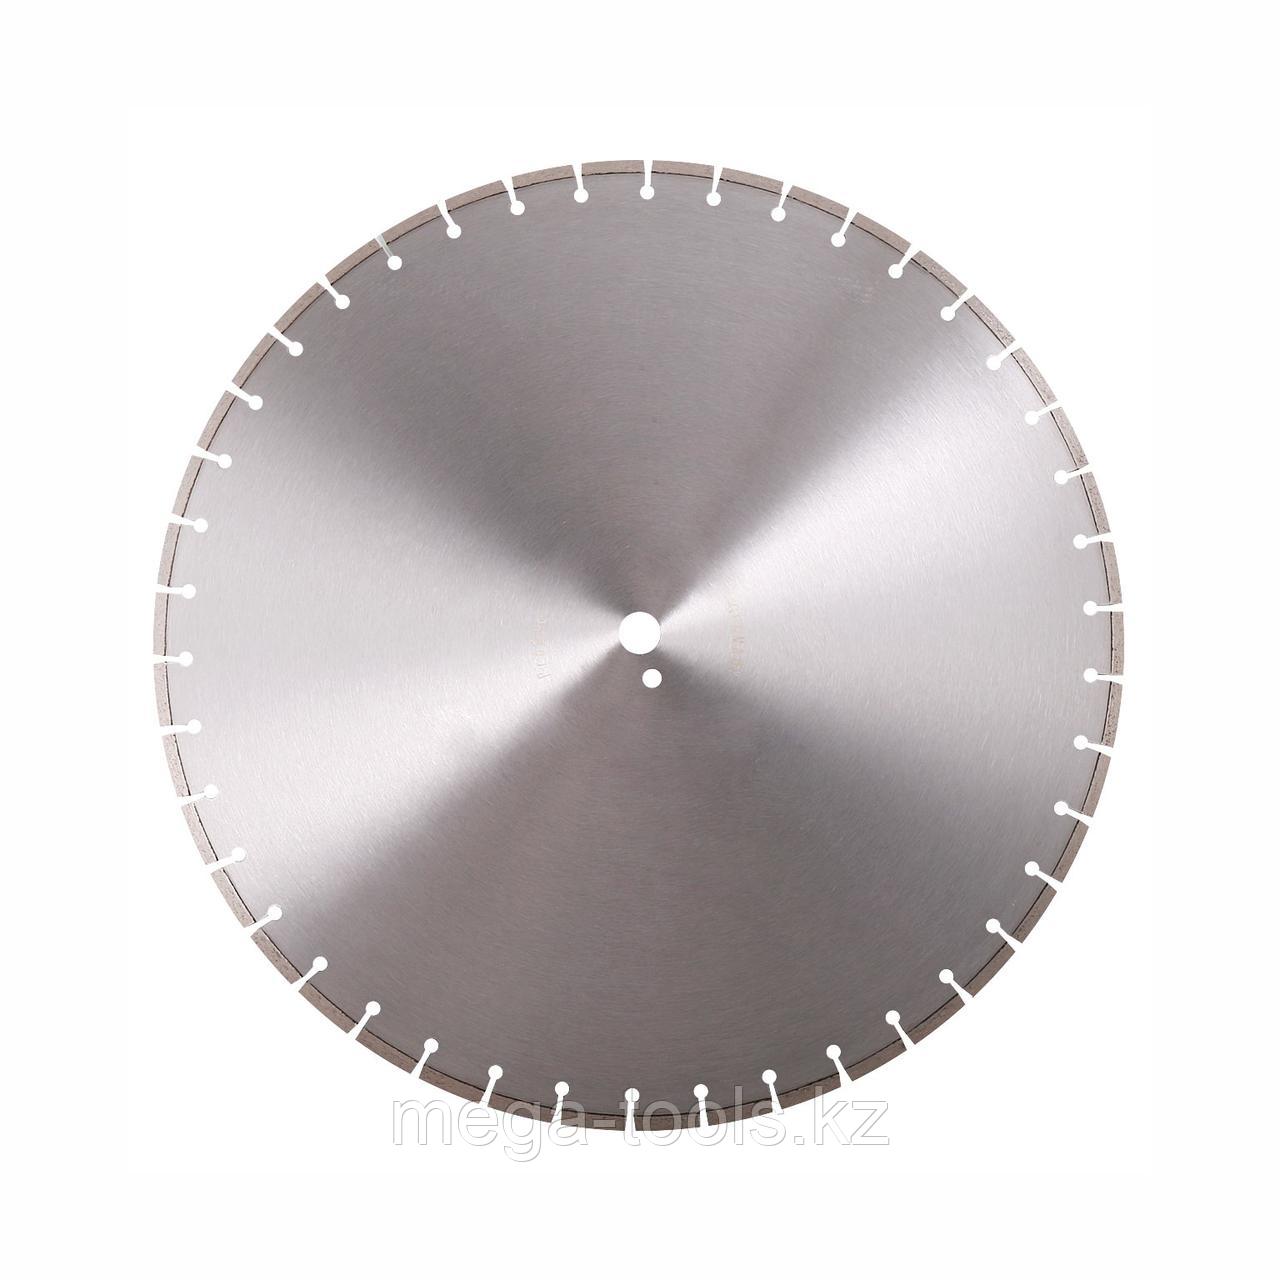 Алмазный отрезной диск для резчика стен ALTECO 800 мм (WC 5280)